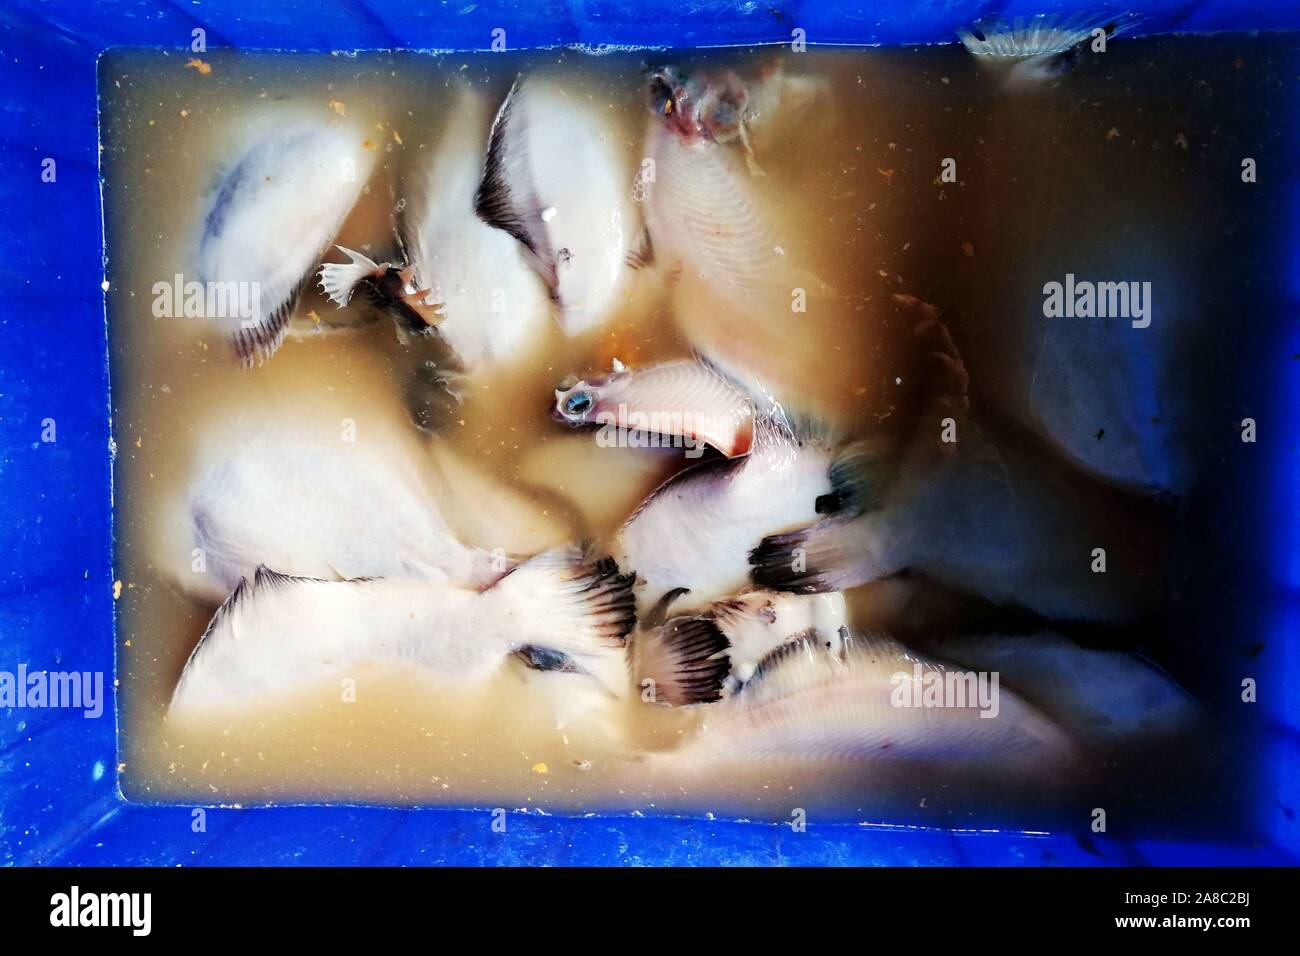 Shandong, Shandong, China. 8 nov, 2019. Shandong, China-pescadores cuelga el pescado seco en el mercado del puerto pesquero Jimiya en Qingdao, Provincia de Shandong, en el este de China, el 7 de noviembre, 2018.secar el pescado a finales de otoño y principios de invierno es una tradición de pescadores en la península de Jiaodong.Pescadores seleccione primero el pescado fresco del mar, corte la espalda y espolvorear las capas de sal gruesa, luego agregar la sal durante un corto periodo de tiempo, alrededor de una hora y, a continuación, enjuague con agua limpia.Por último, la difusión en la red de pesca o colgarlos para que se sequen. Cuando son 70% secas pueden ser comidos. Crédito: SIPA Asia/Zuma alambre/Alamy Live News Foto de stock